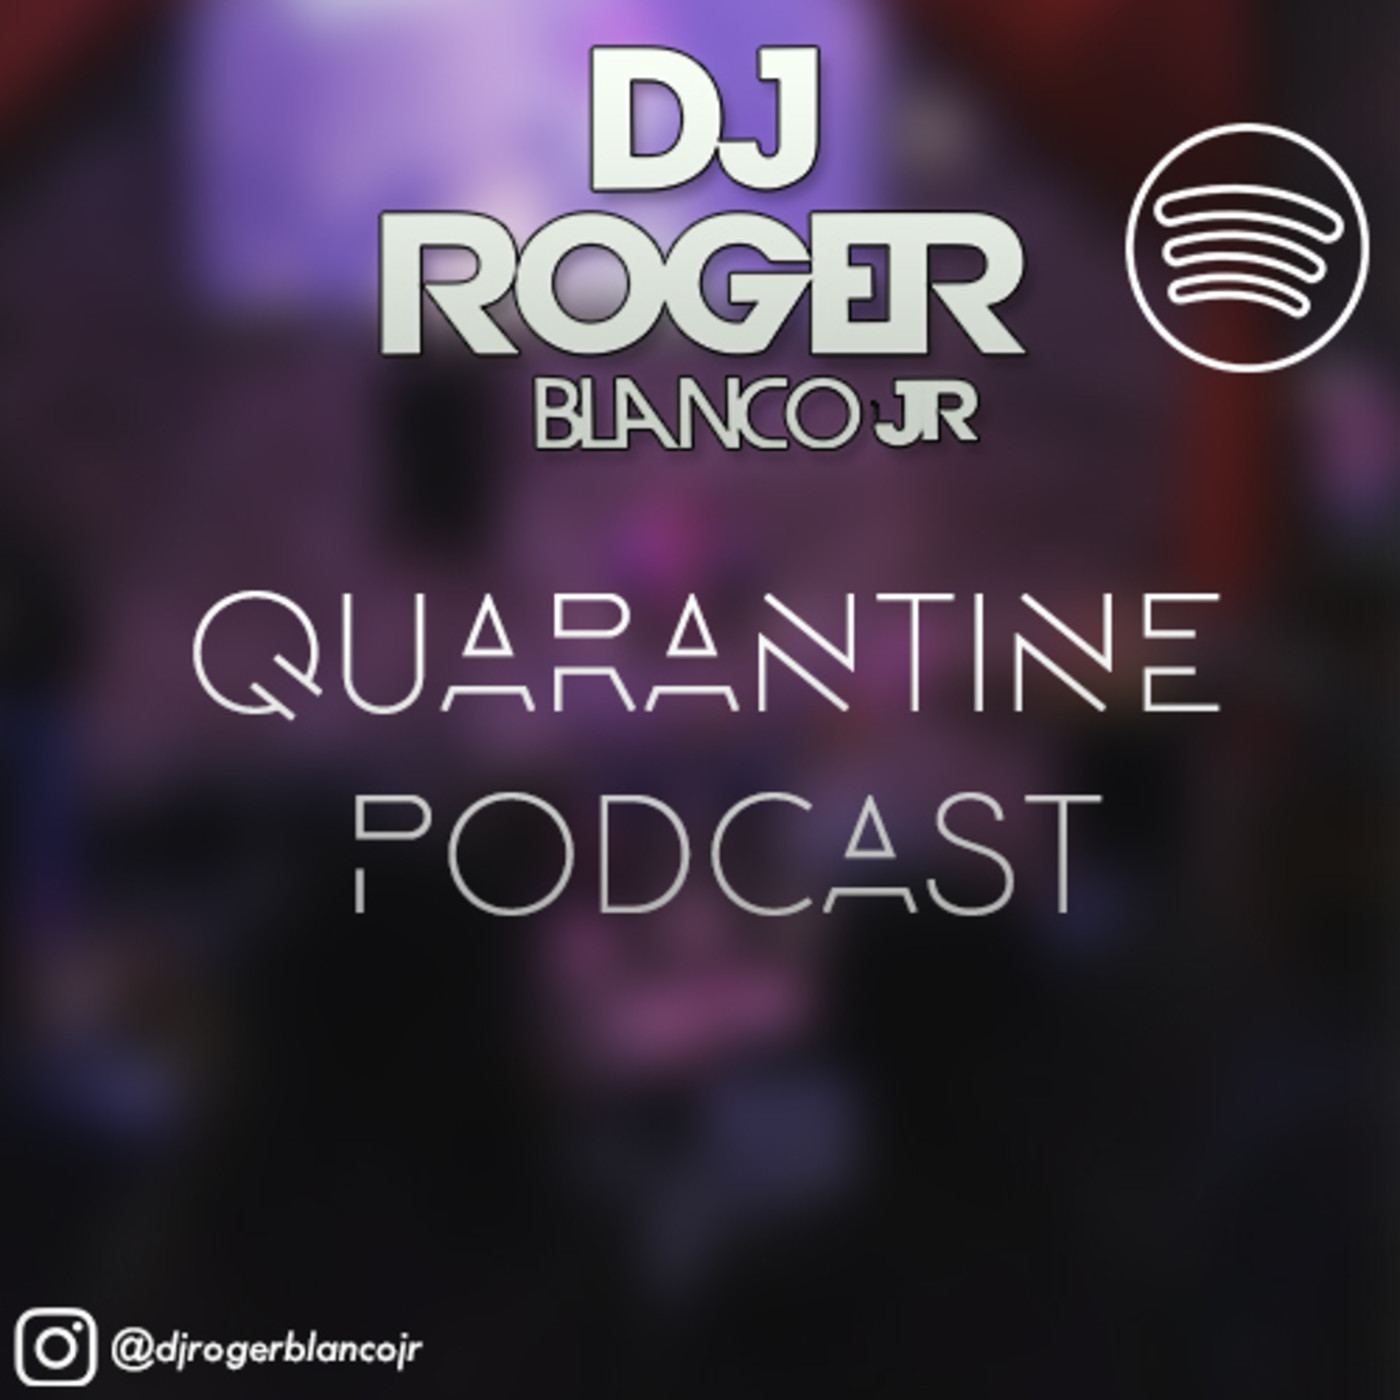 DJ Roger Blanco Jr. Quarantine Podcast